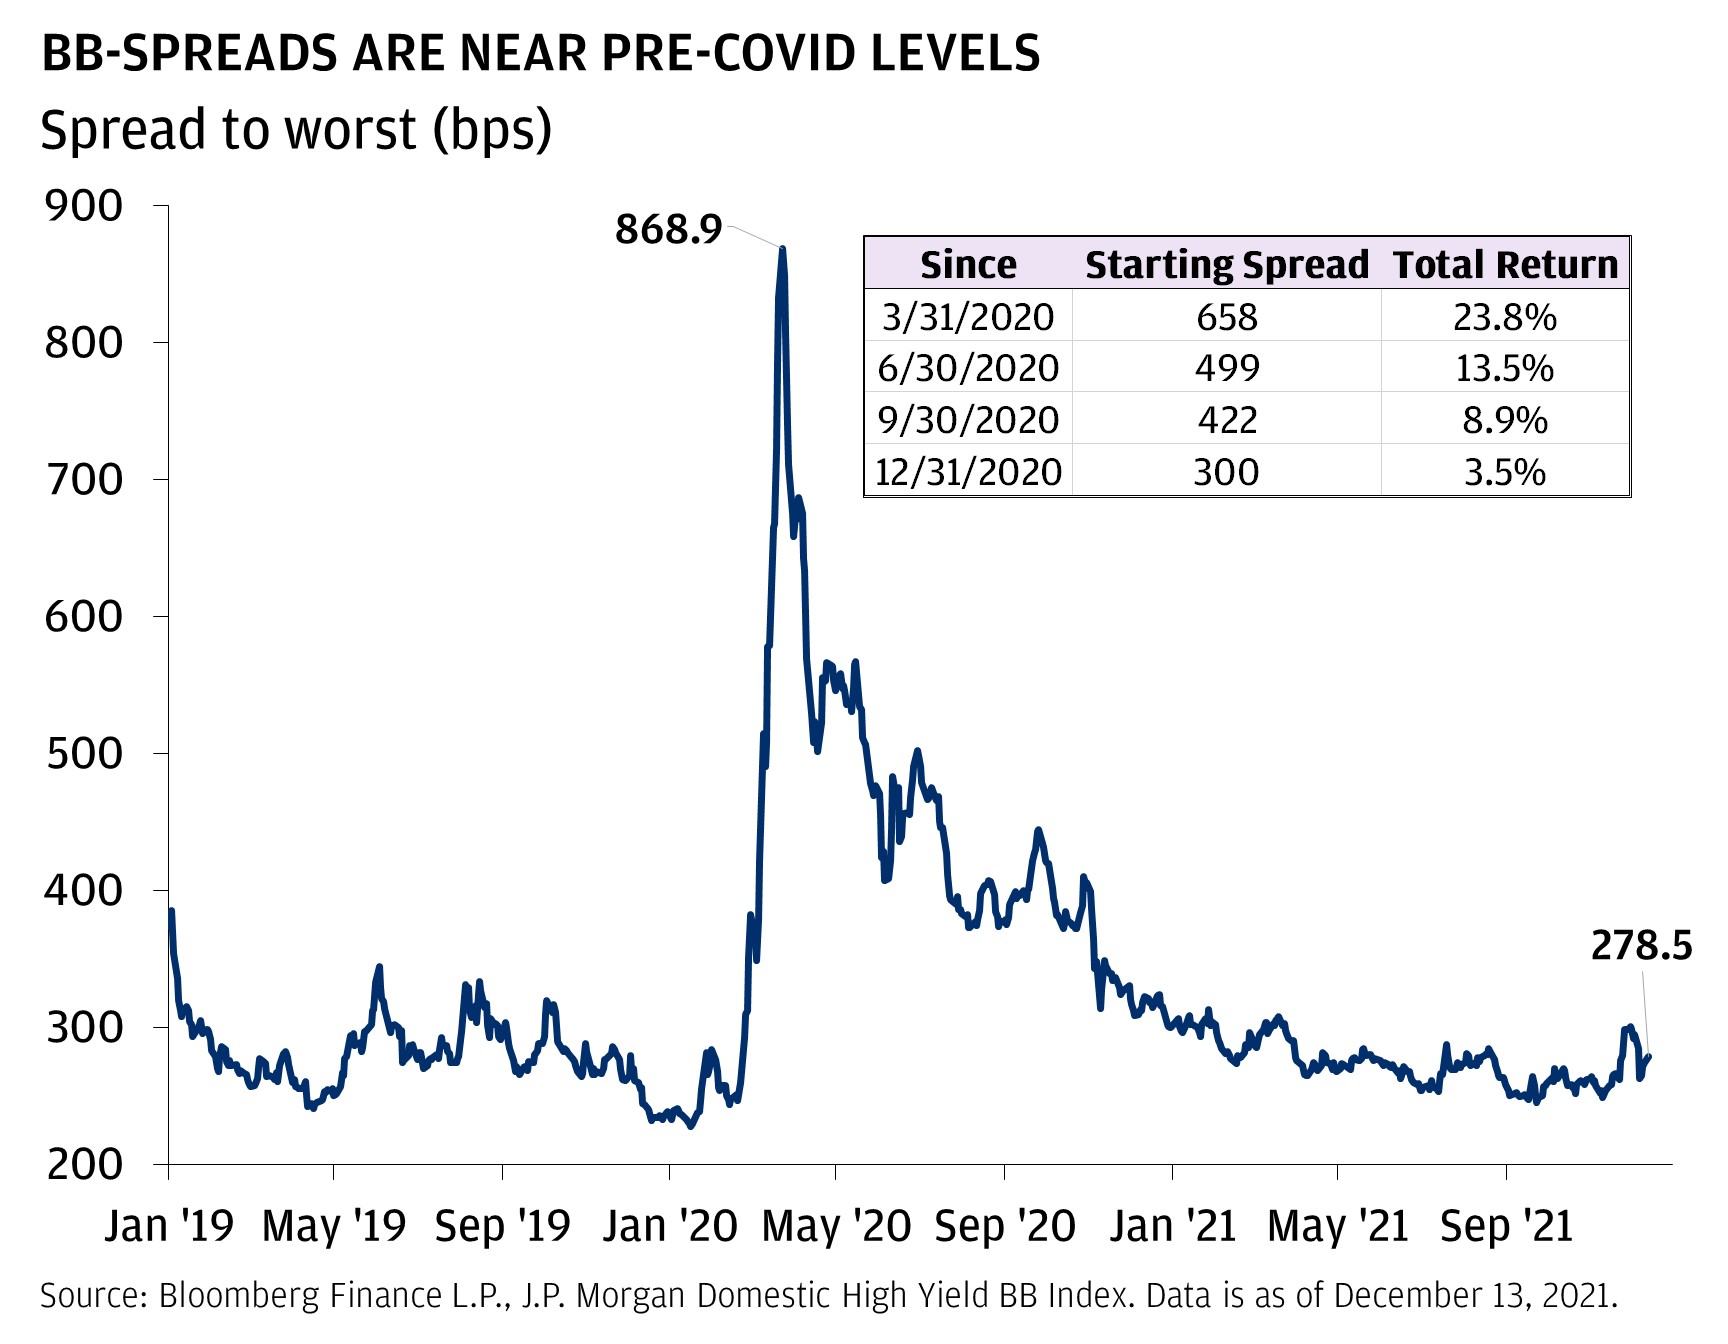 BB-spreads are near pre-covid levels